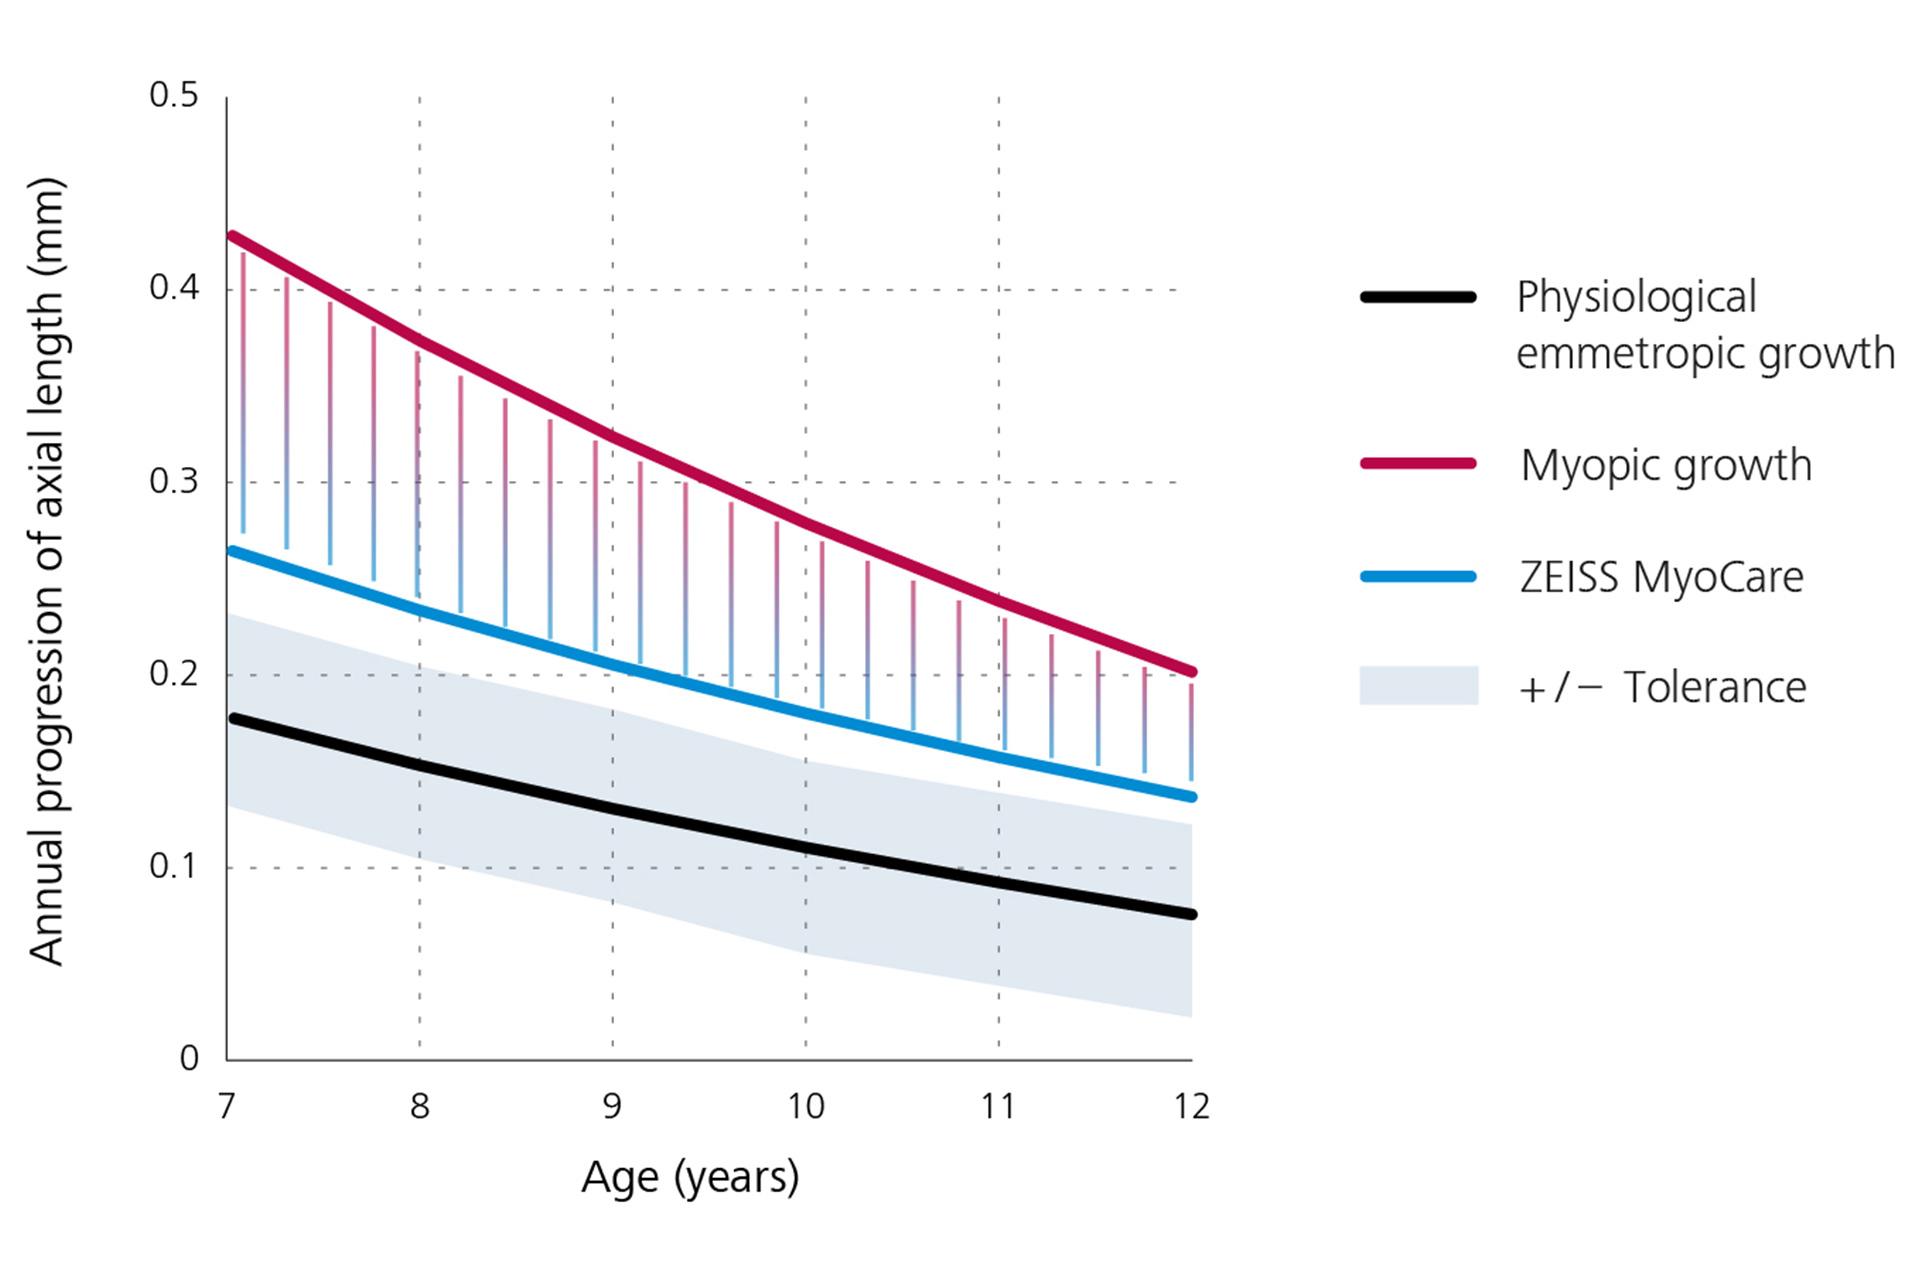 Um gráfico de linhas que exibe a progressão anual do comprimento axial, mostrando o crescimento emetrópico fisiológico em preto na parte inferior, o crescimento miópico em vermelho na parte superior e os resultados para as lentes ZEISS MyoCare em azul no meio. A partir deste gráfico podemos deduzir que a progressão da miopia está abaixo da curva de crescimento miópico se forem usadas lentes ZEISS MyoCare.  